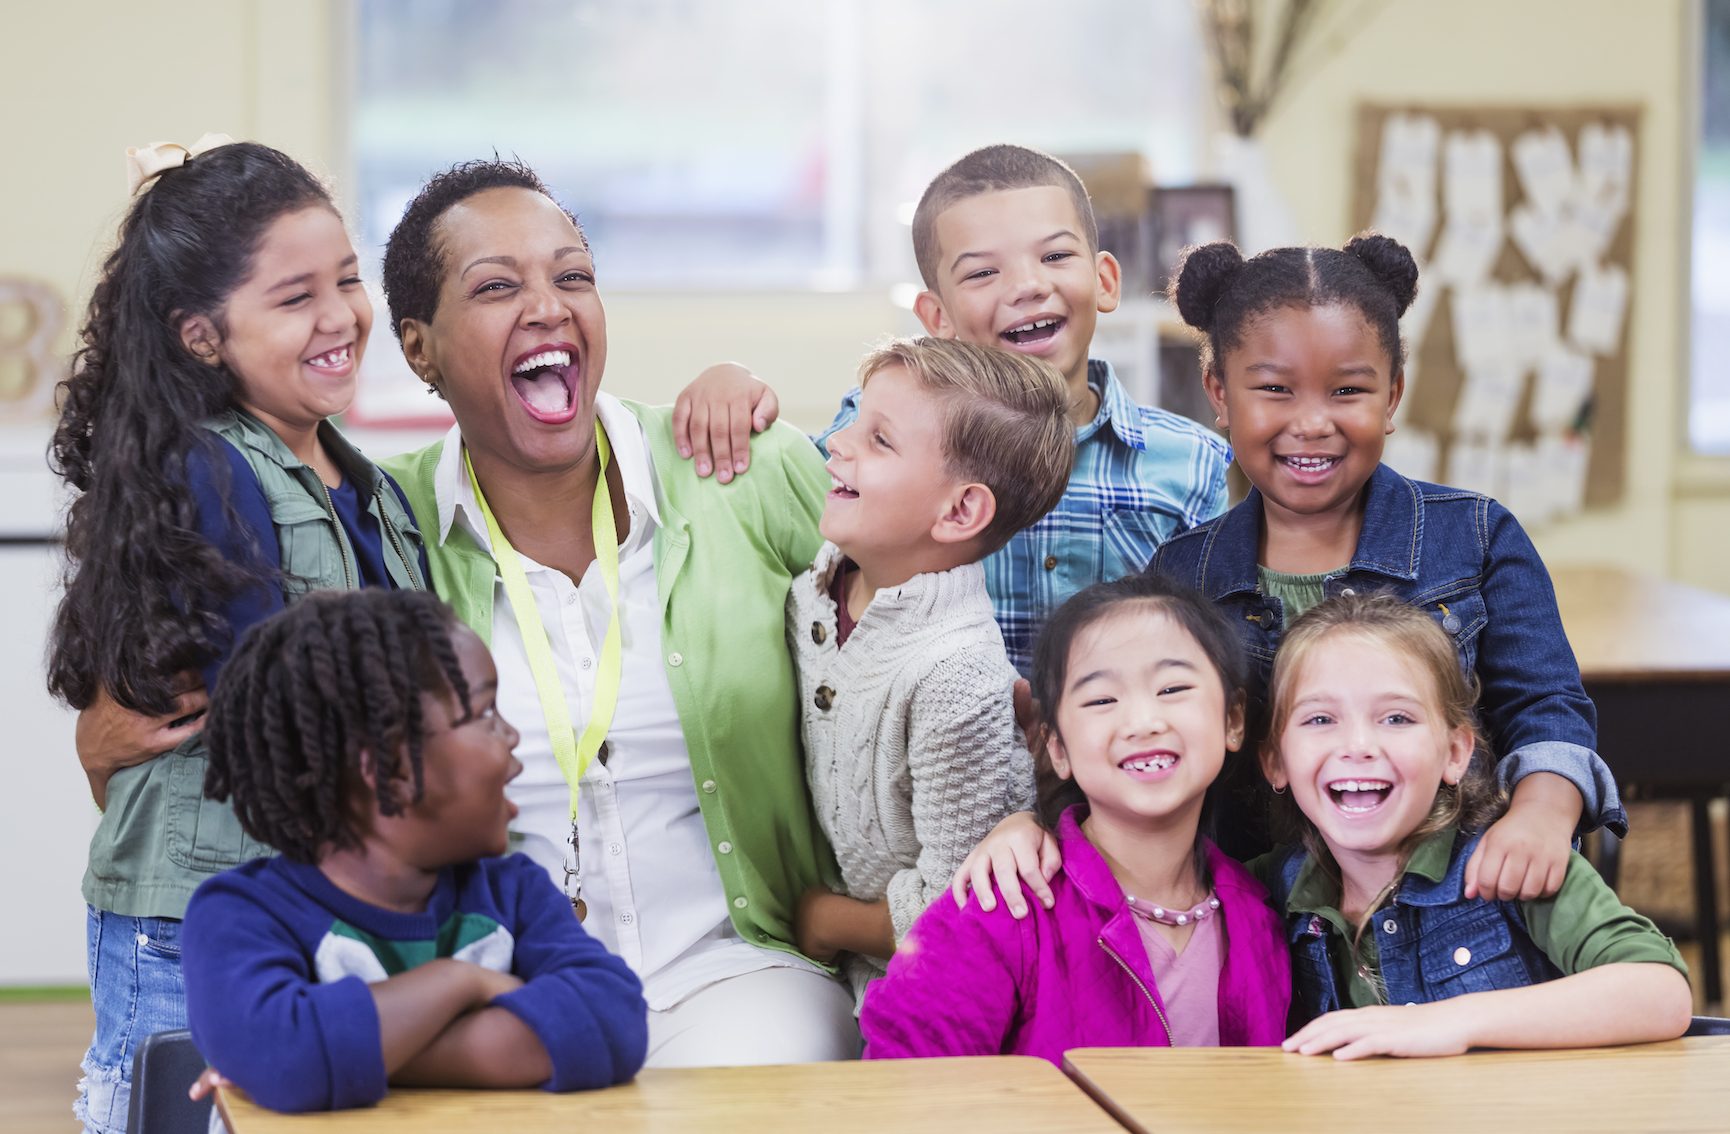 7 children surround and hug a happy teacher.